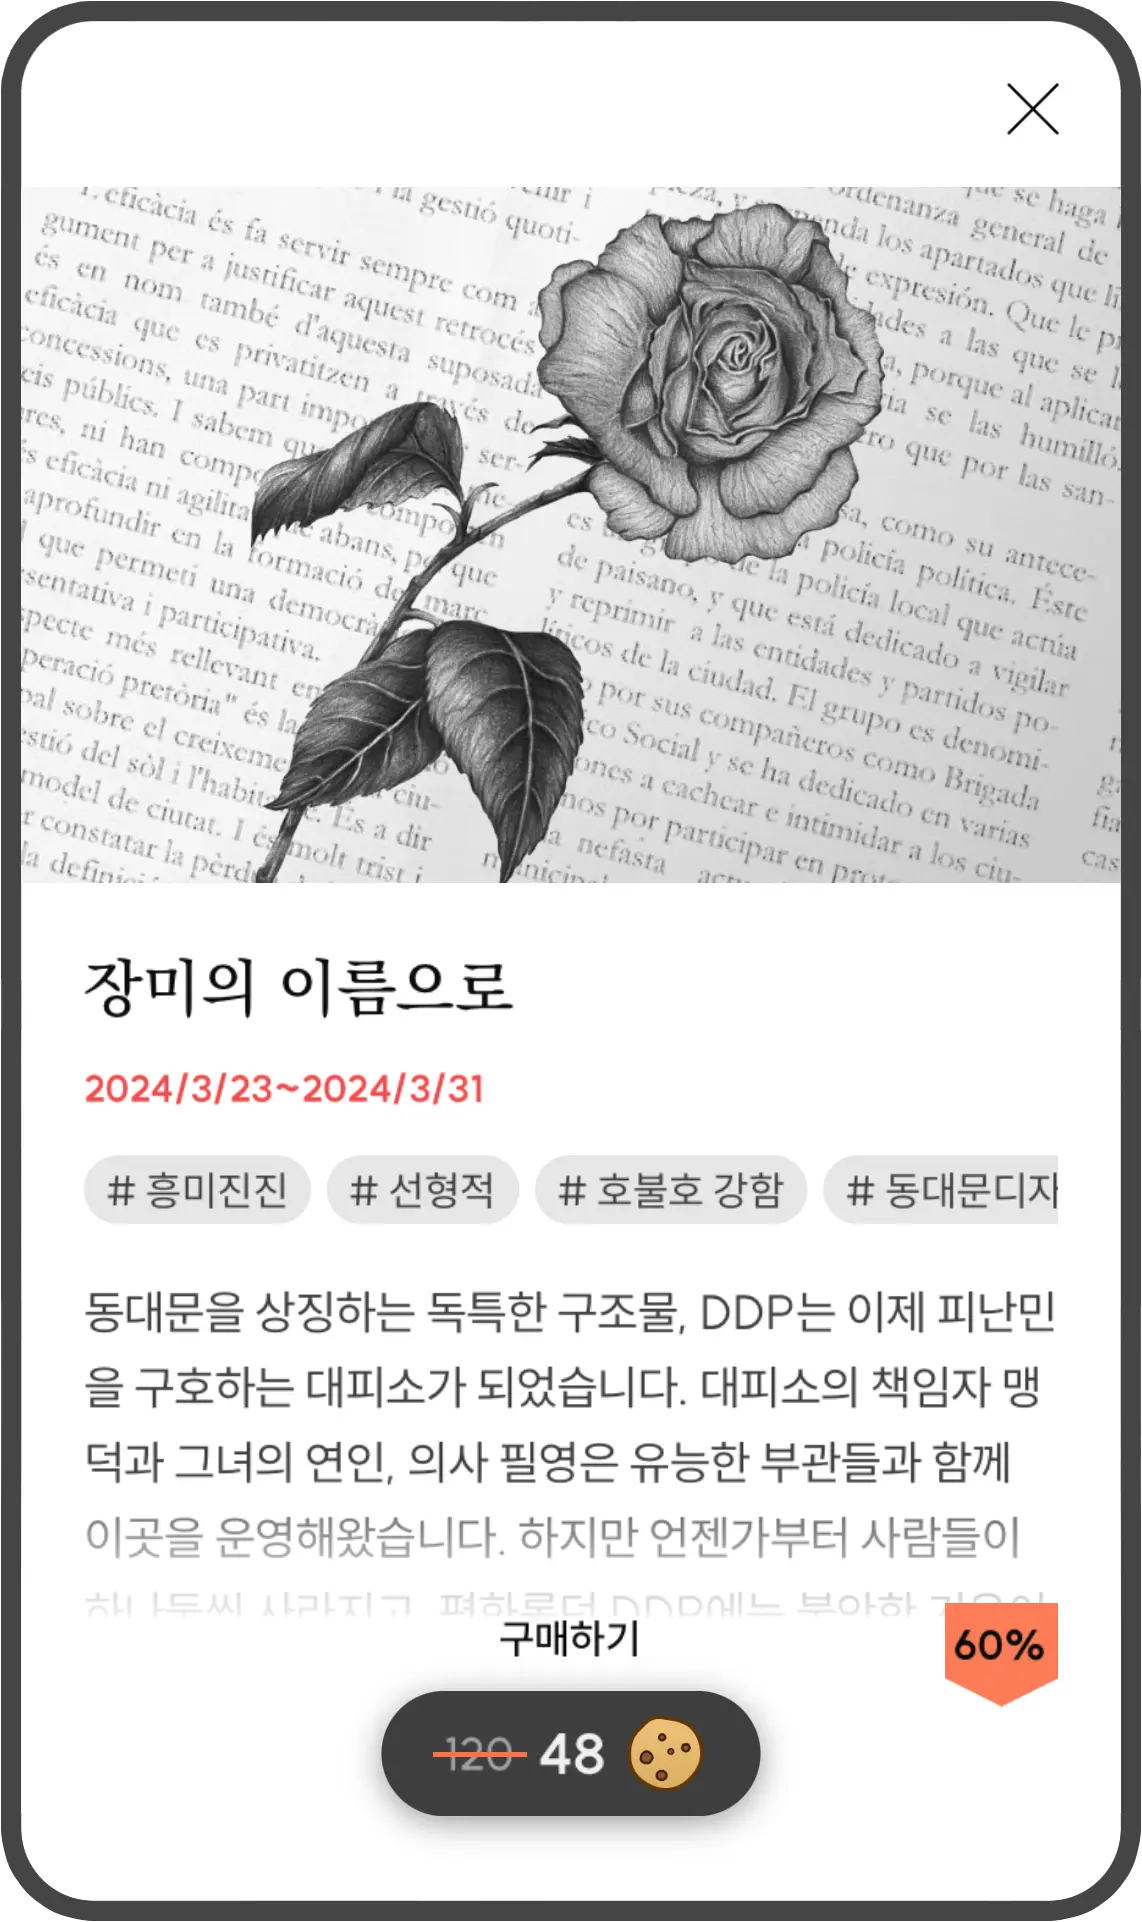 서울 2033의 확장팩, 장미의 이름으로에 대한 정보입니다.